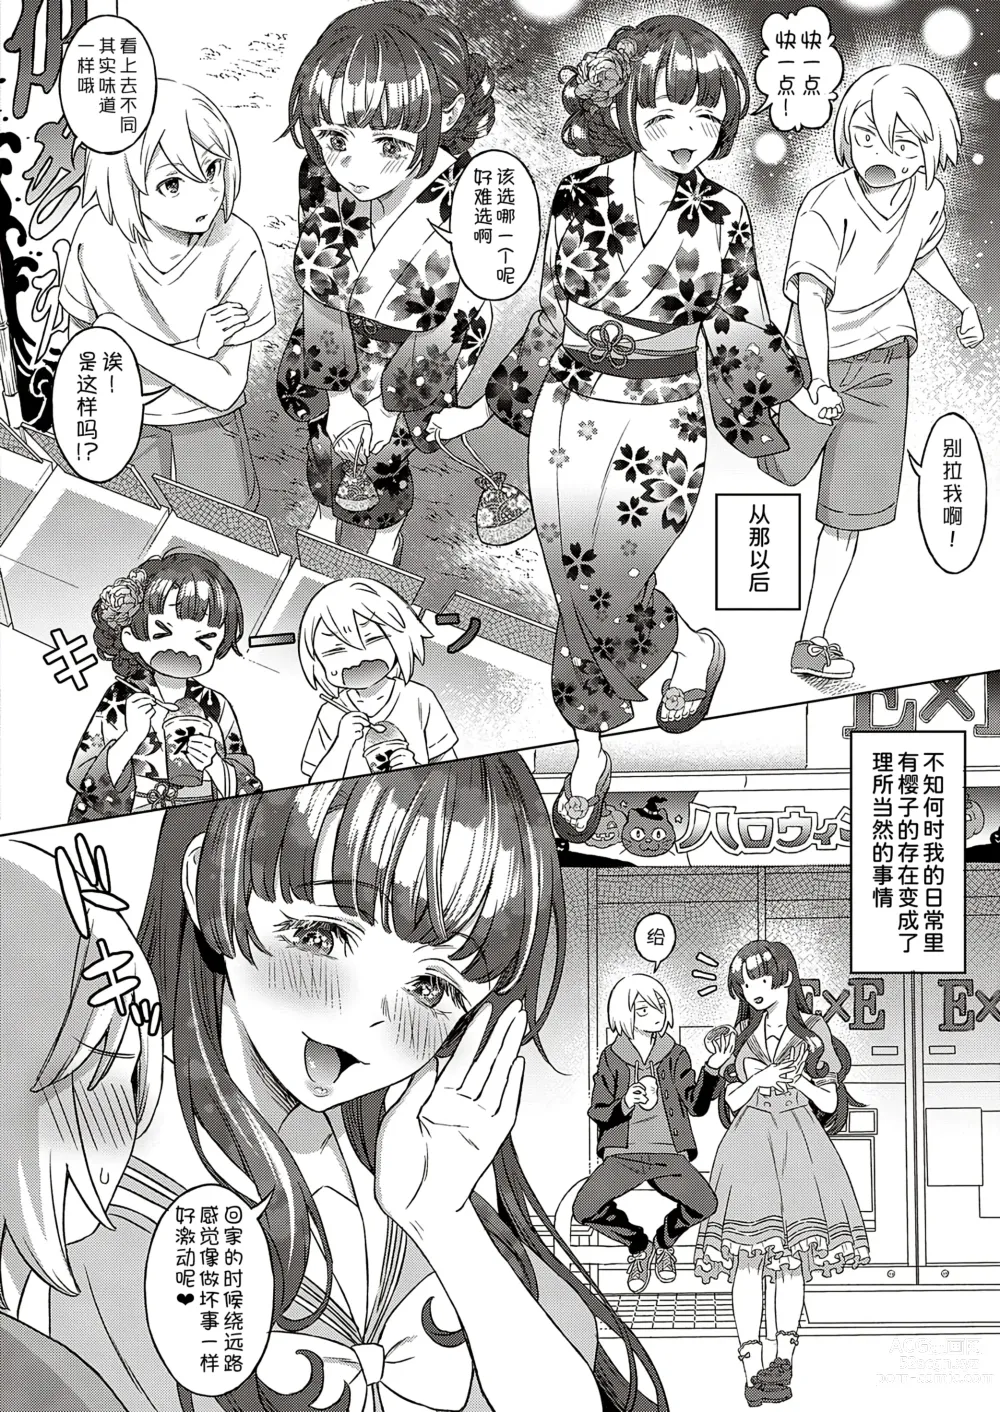 Page 9 of manga Kohakuiro no Machi, Sakura ga Ita Kisetsu